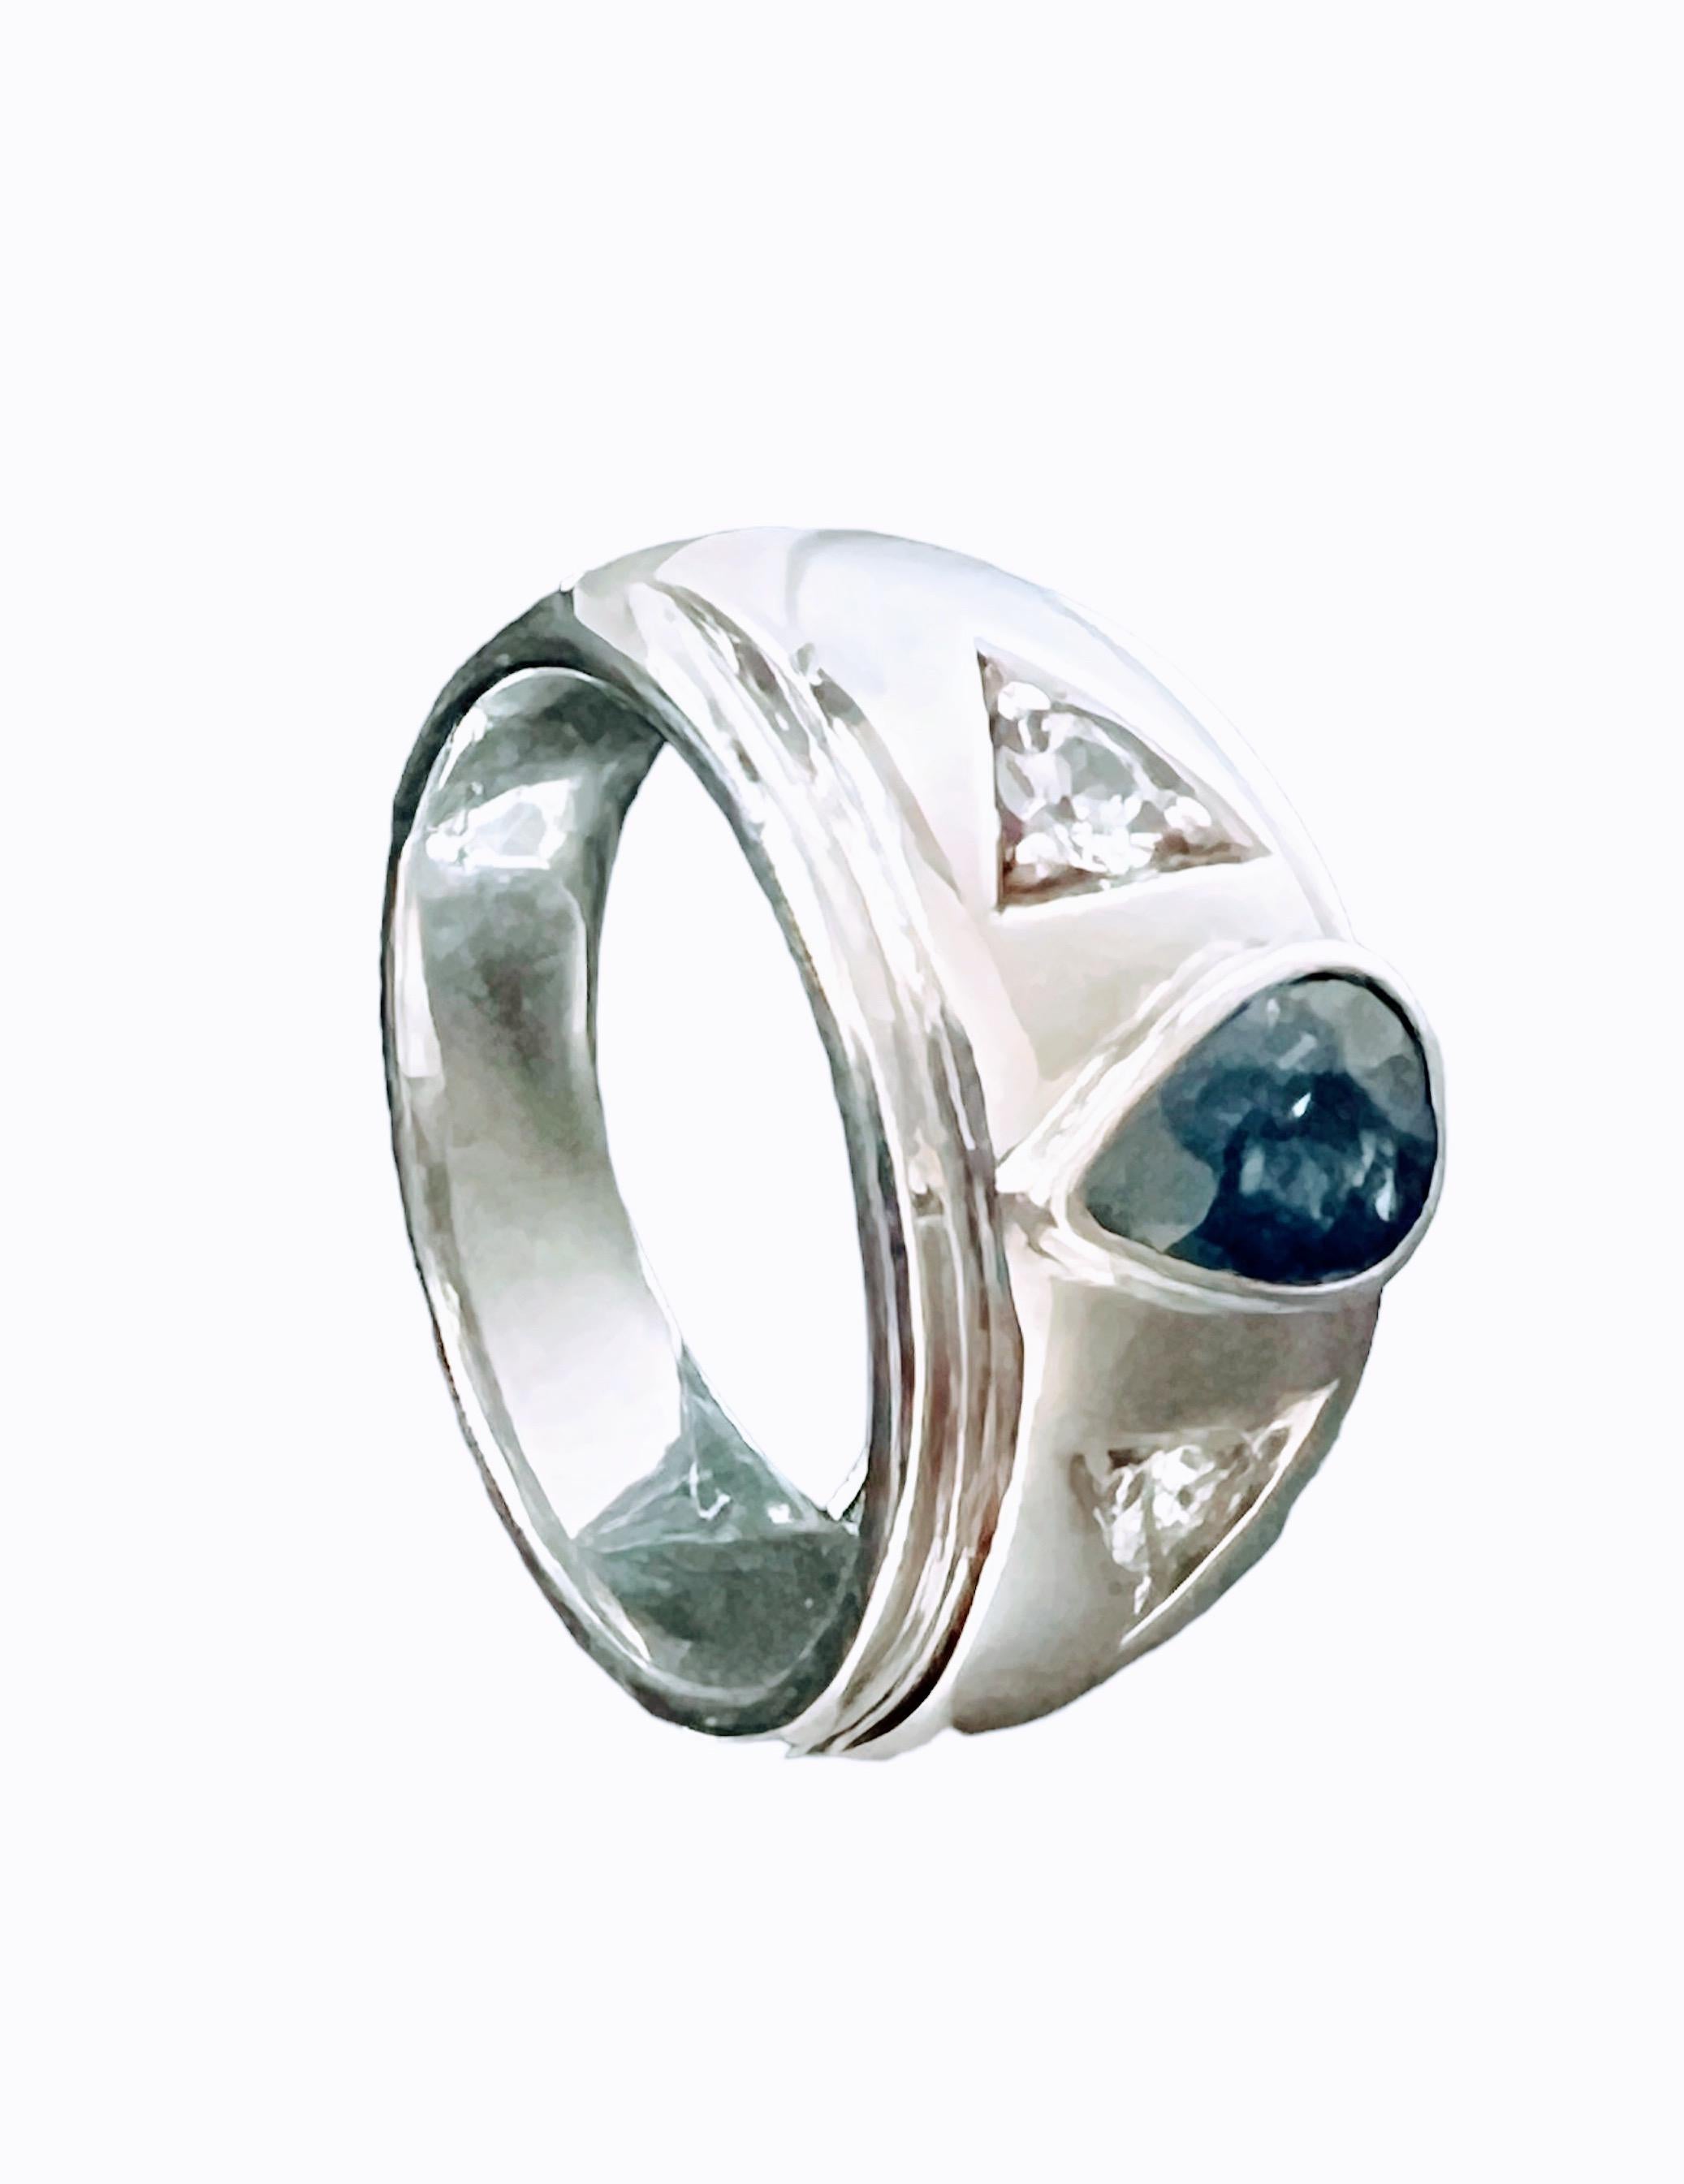 Erhöhen Sie Ihren Stil mit unserem fesselnden 1,5-karätigen birnenförmigen Ring aus platinbeschichtetem Sterlingsilber mit natürlichem blauem Saphir. Dieses atemberaubende Stück zeigt einen natürlichen, unbehandelten birnenförmigen blauen Saphir,